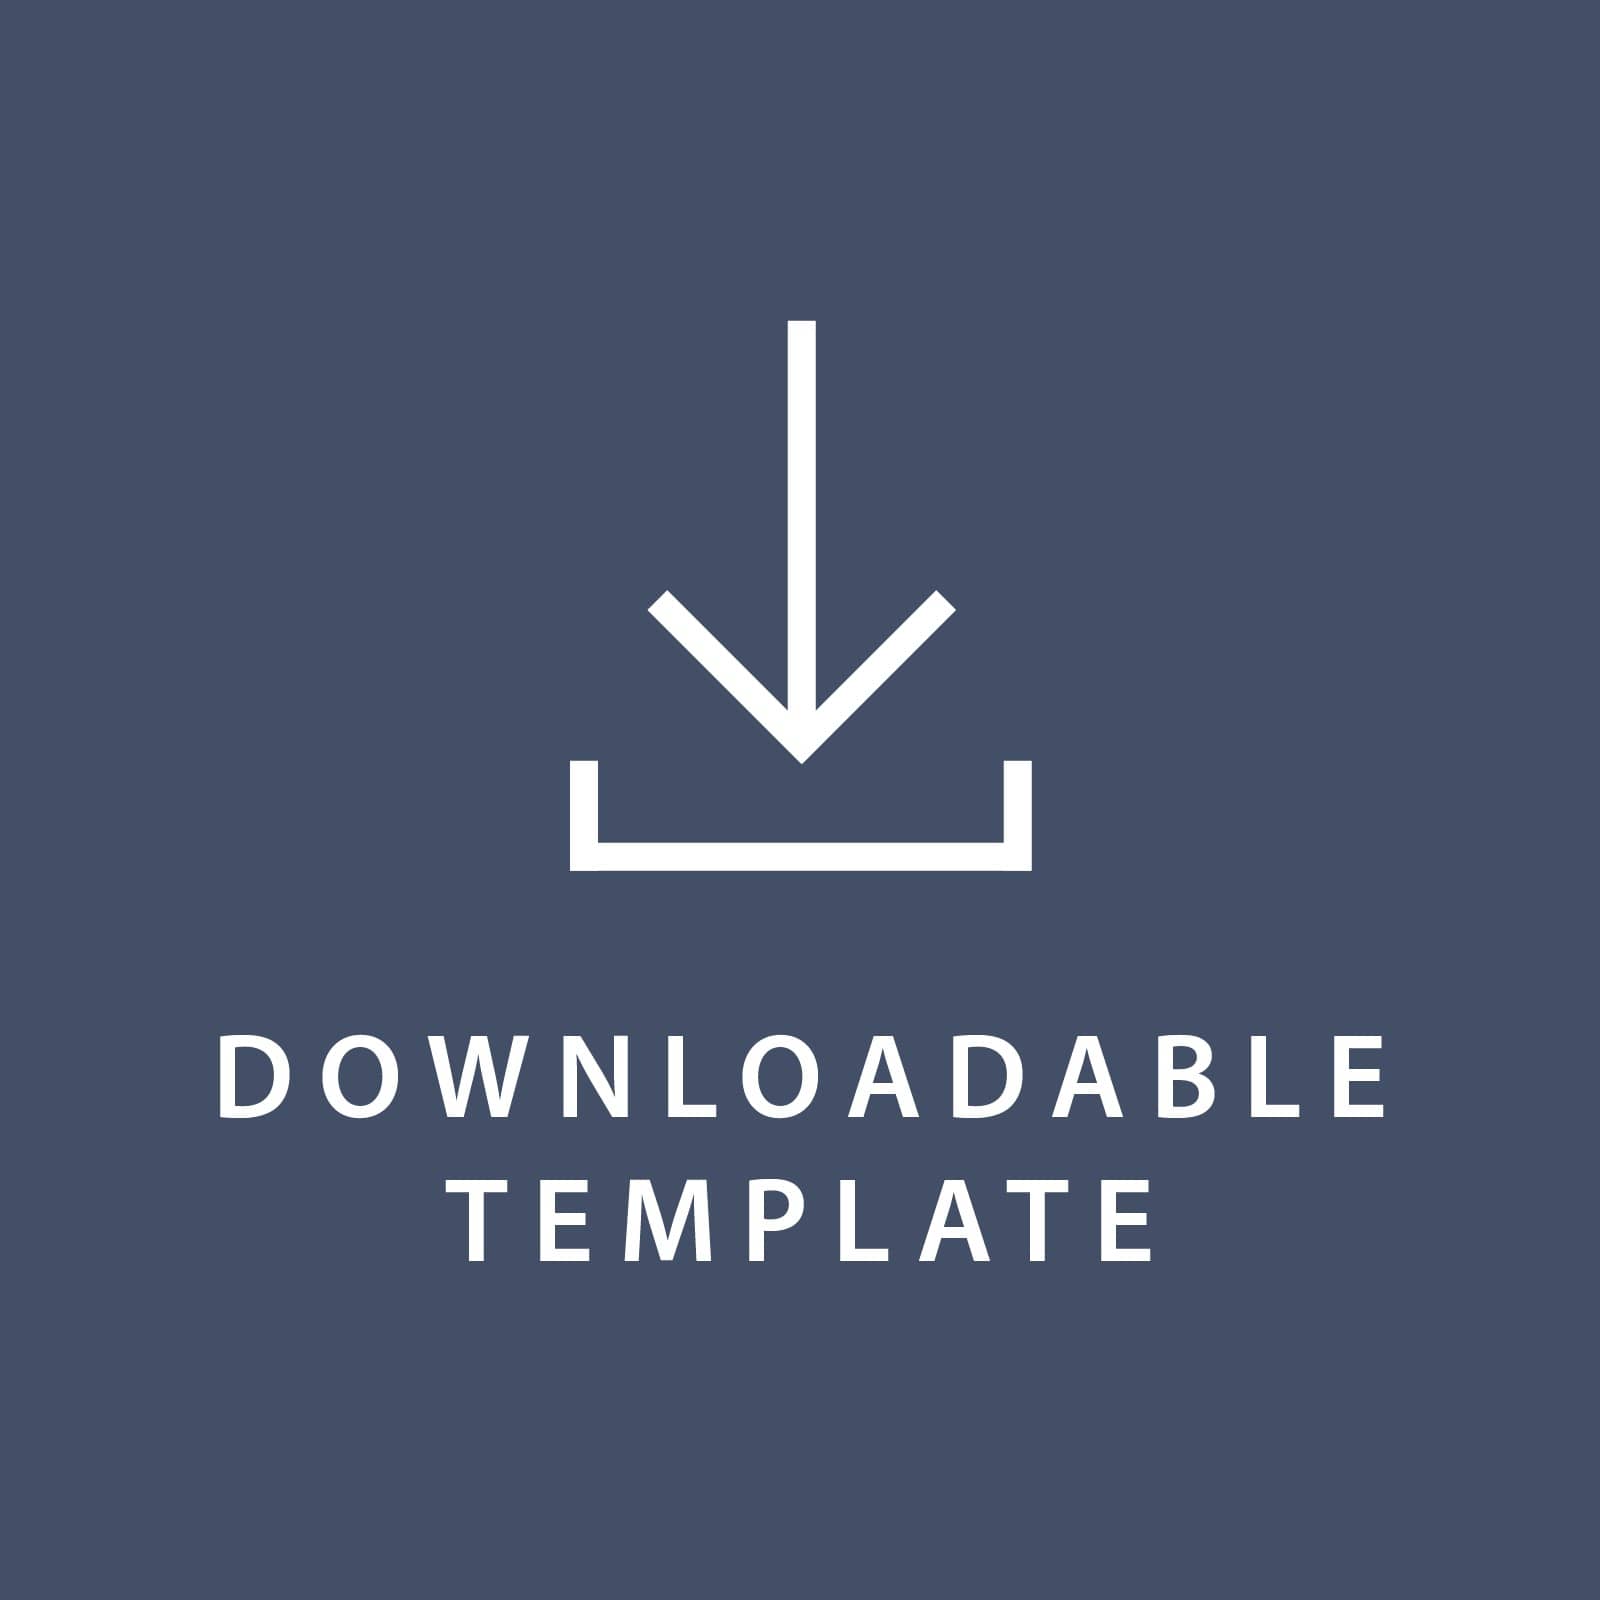 Template for 10 x 7 Program Covers Gartner Studios Template tmplt0874